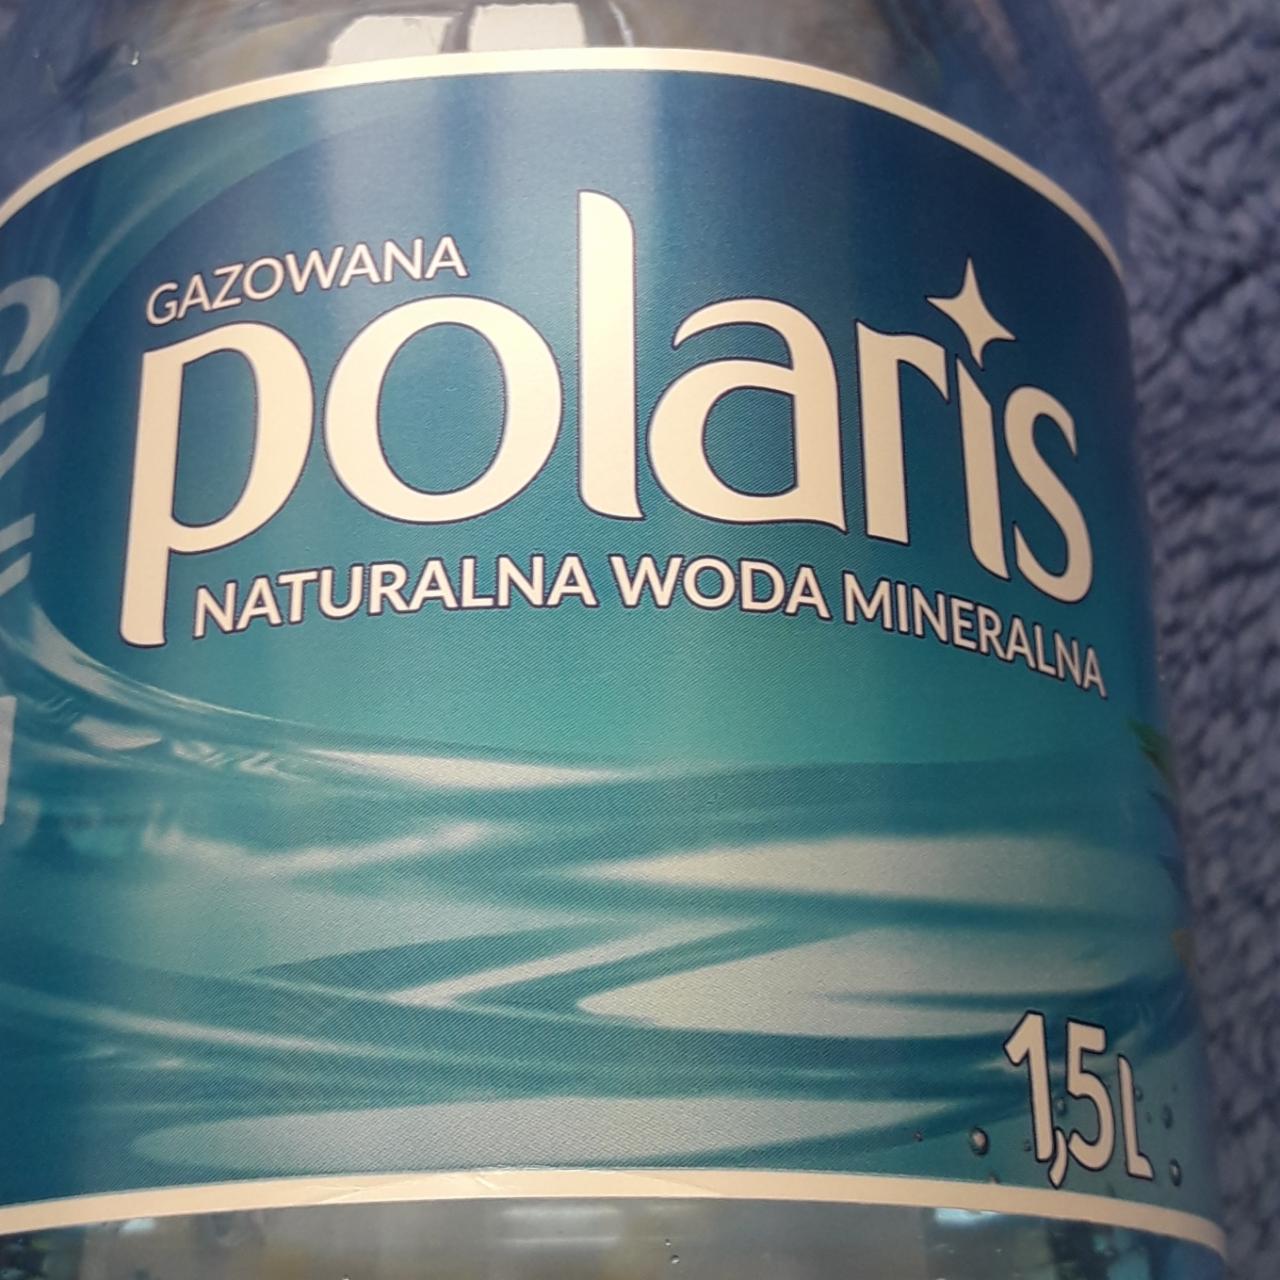 Zdjęcia - Gazowananaturalna woda mineralna Polaris